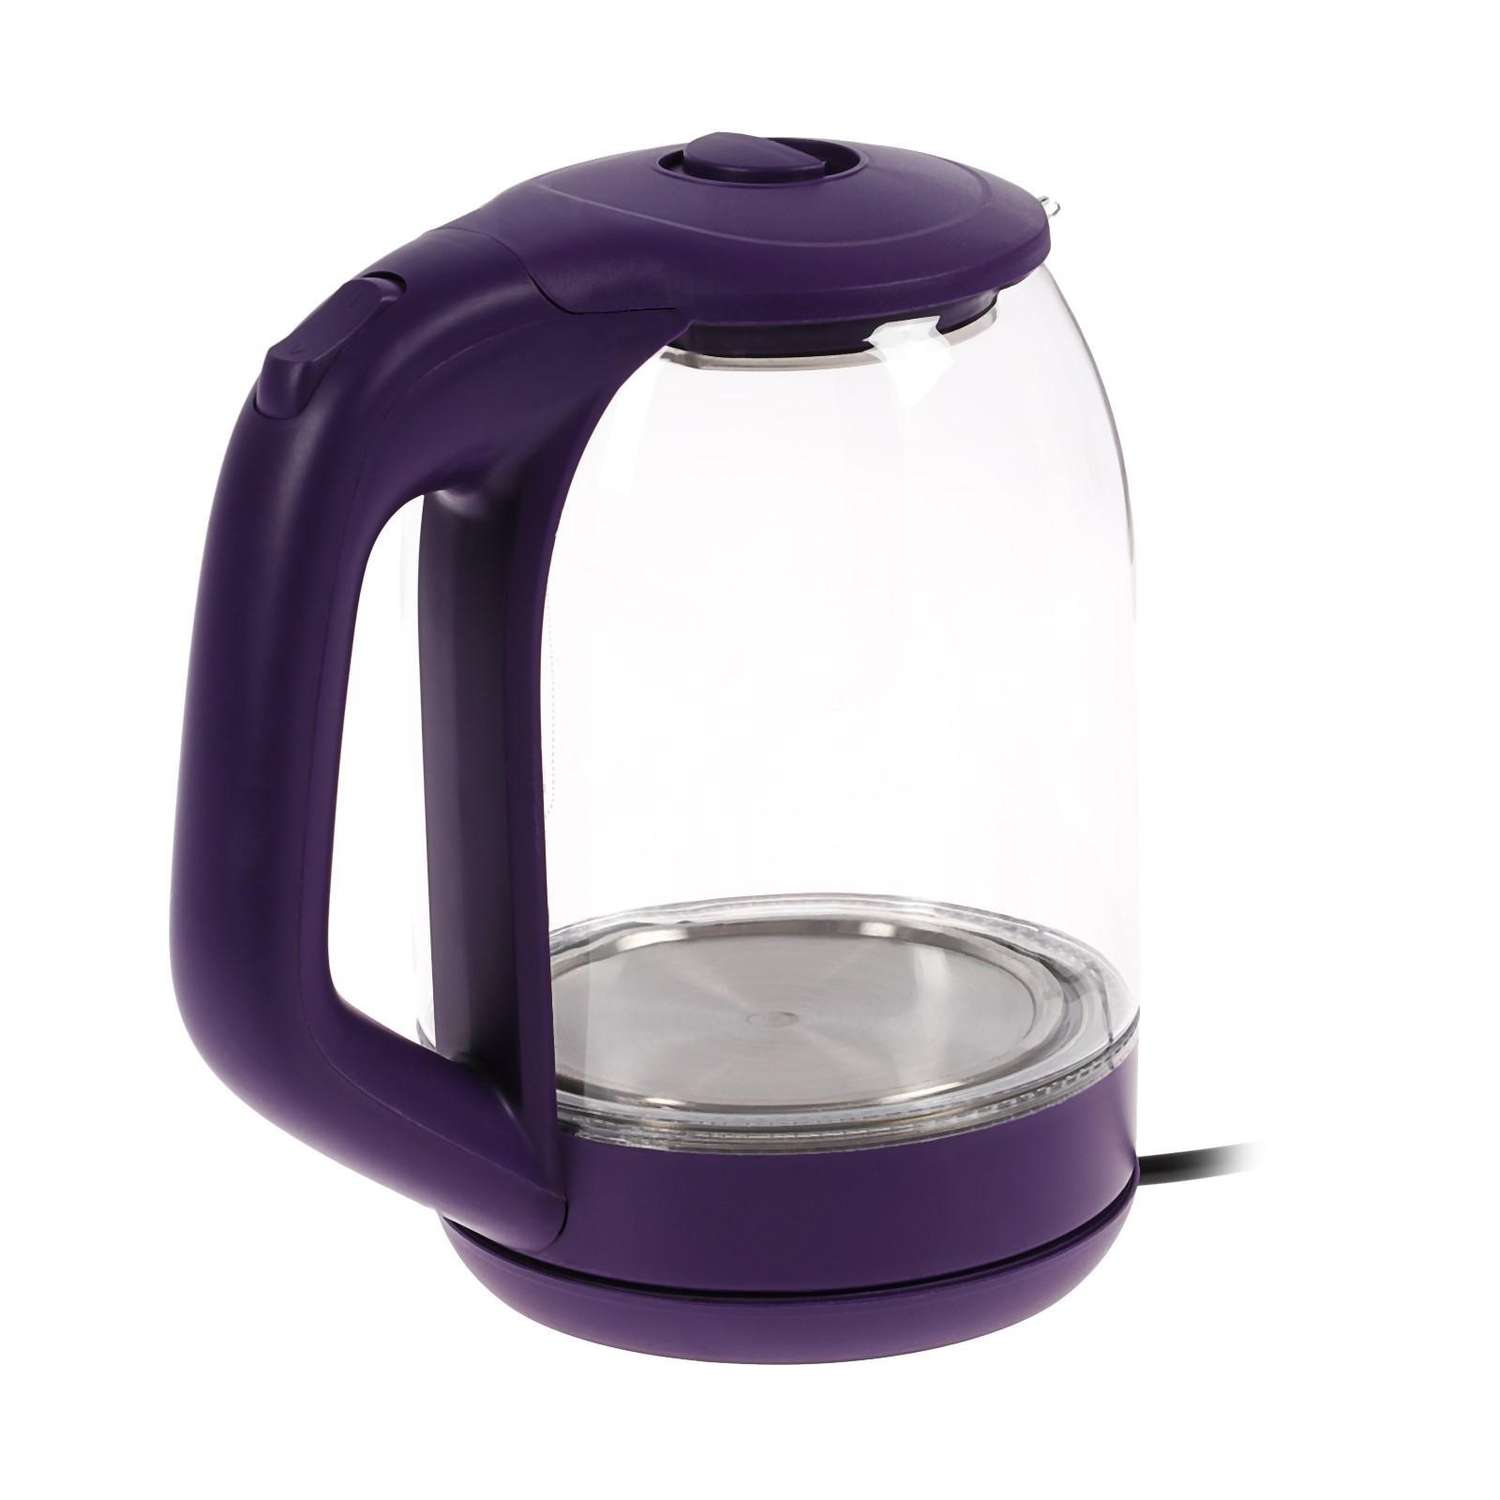 Чайник Luazon Home электрический LSK-1809 стекло 1.8 л 1500 Вт подсветка фиолетовый - фото 5